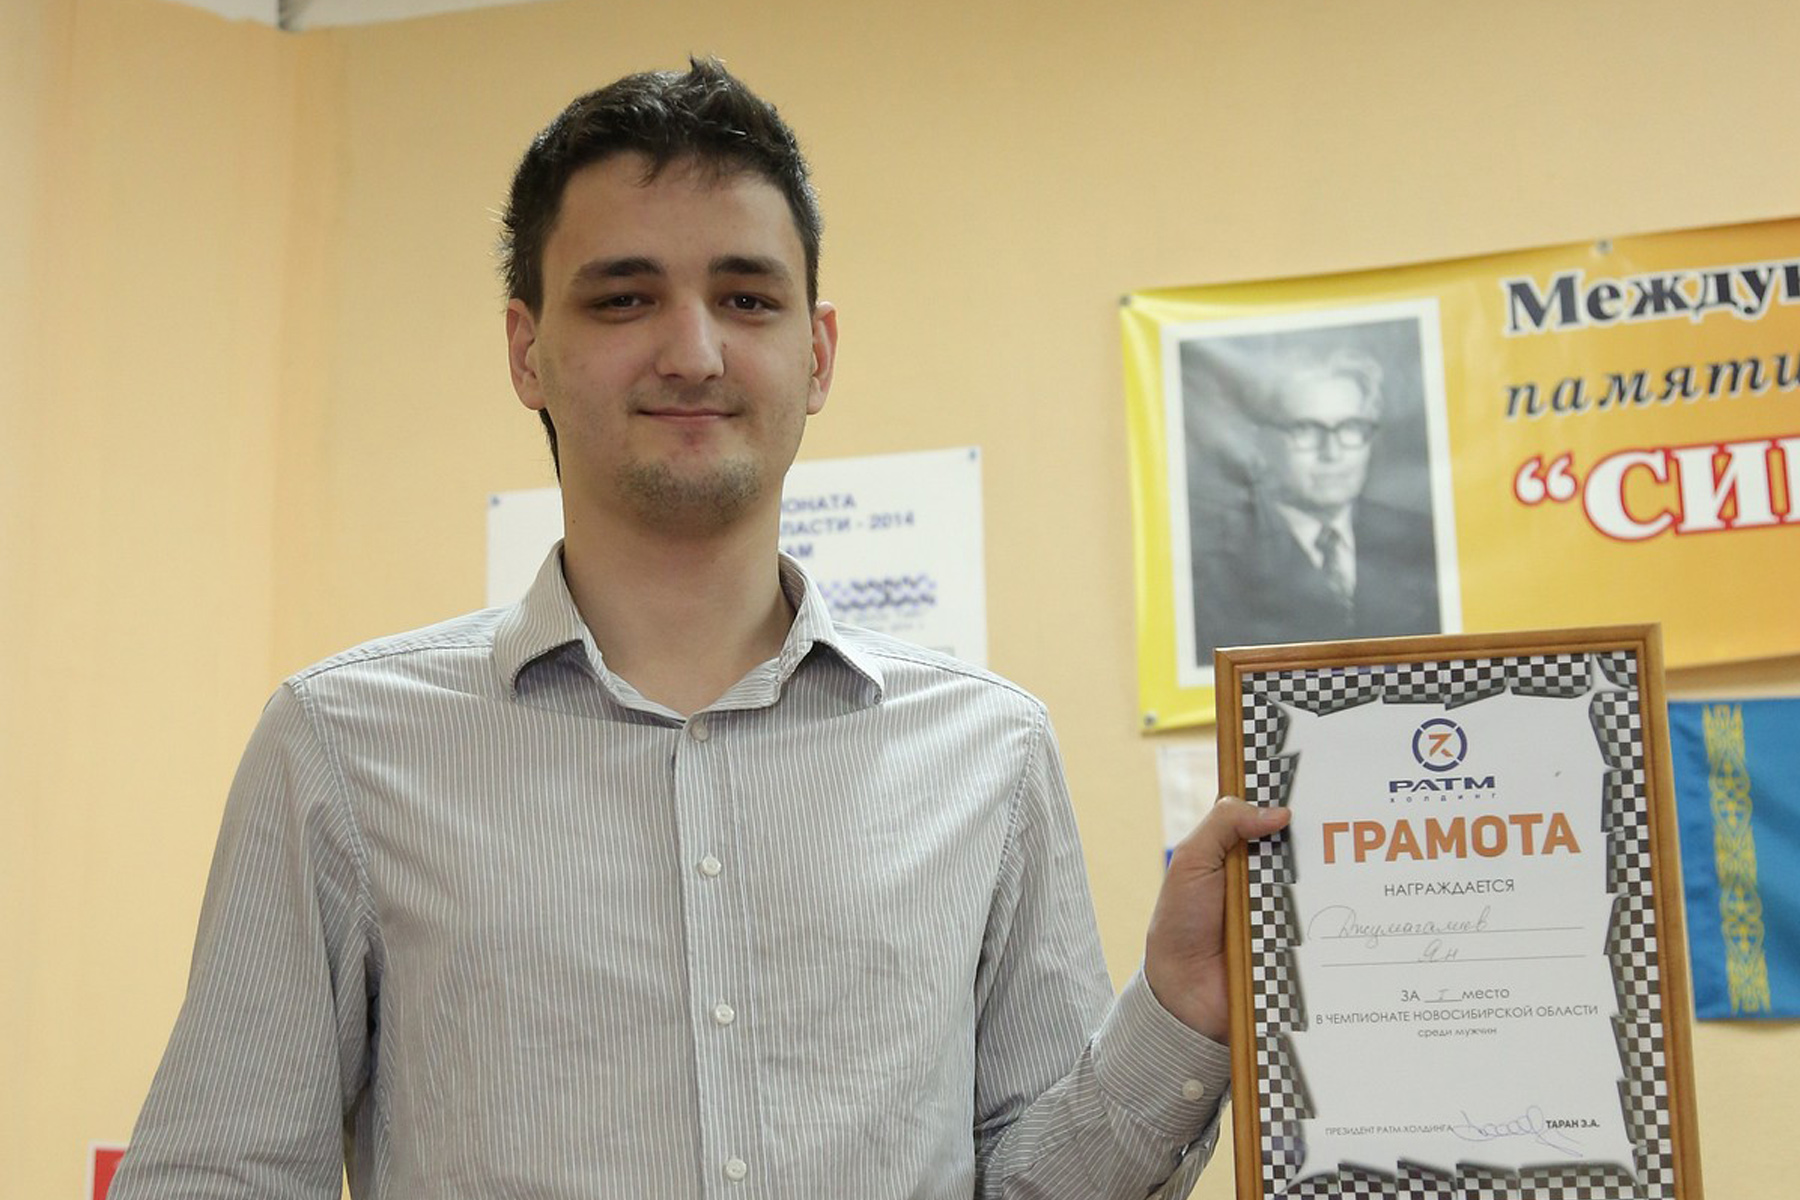 Чемпион области по шахматам, мастер FIDE Ян 
Джумагалиев